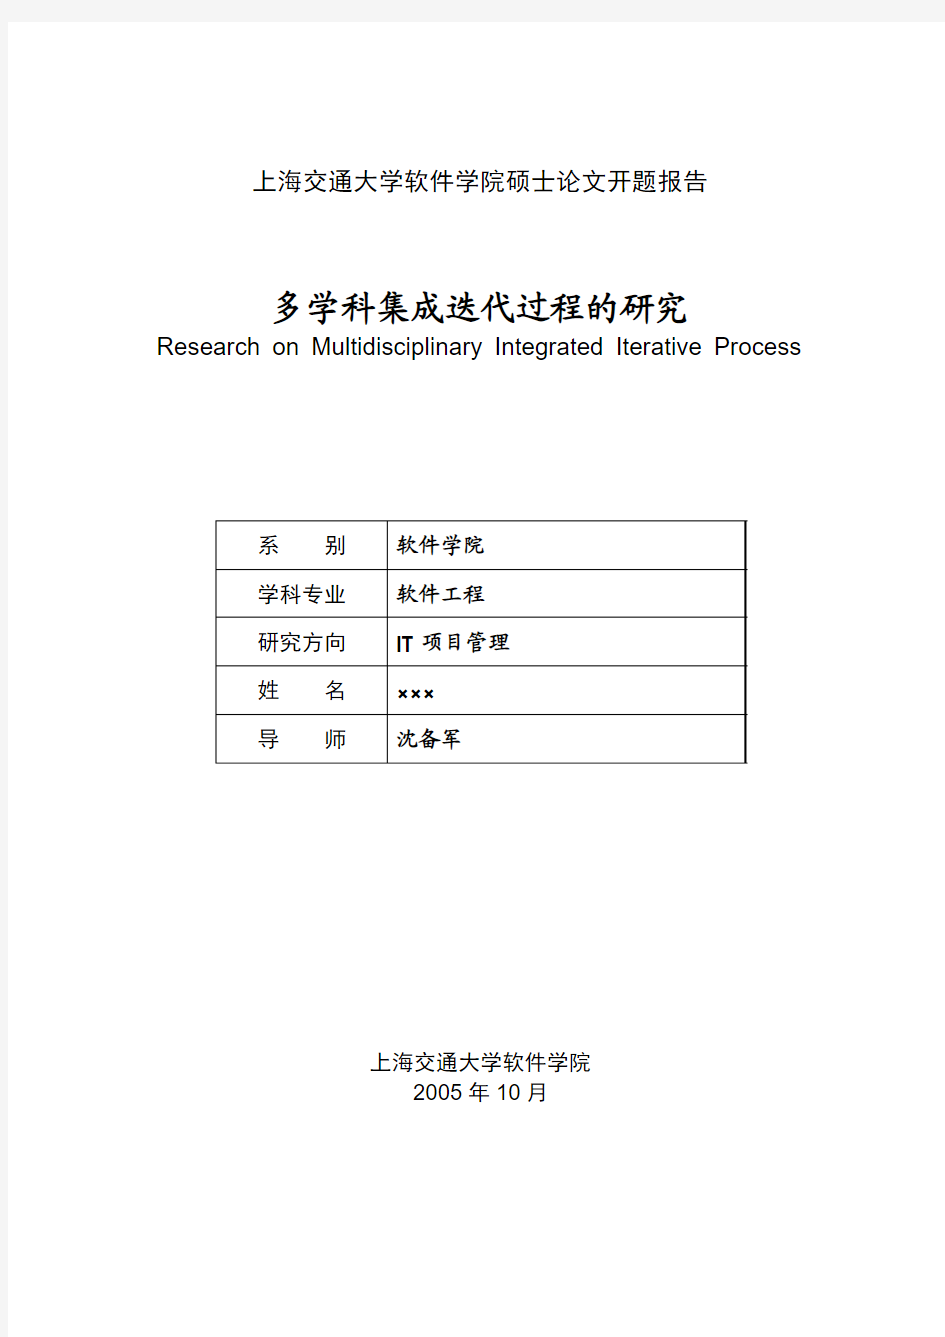 上海交通大学软件学院硕士论文开题报告